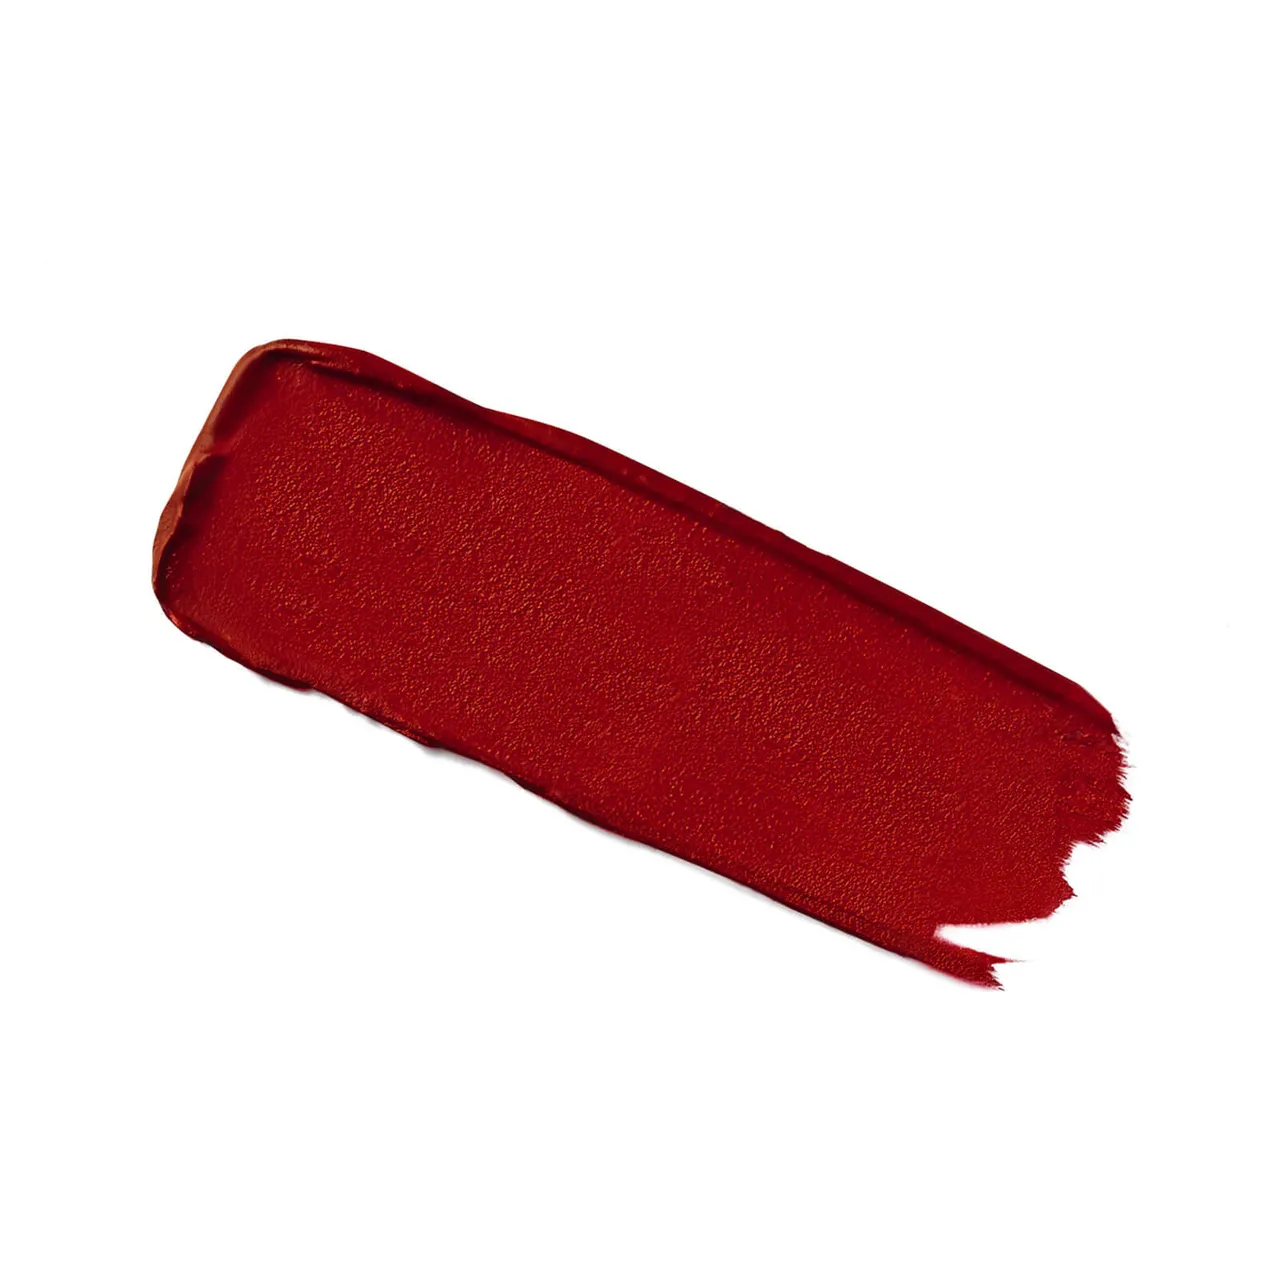 Guerlain Kisskiss Tender Matte 16 Hour Comfort Lightweight Luminous Matte Lipstick 2.8g (Various Shades) - 940 My Rouge